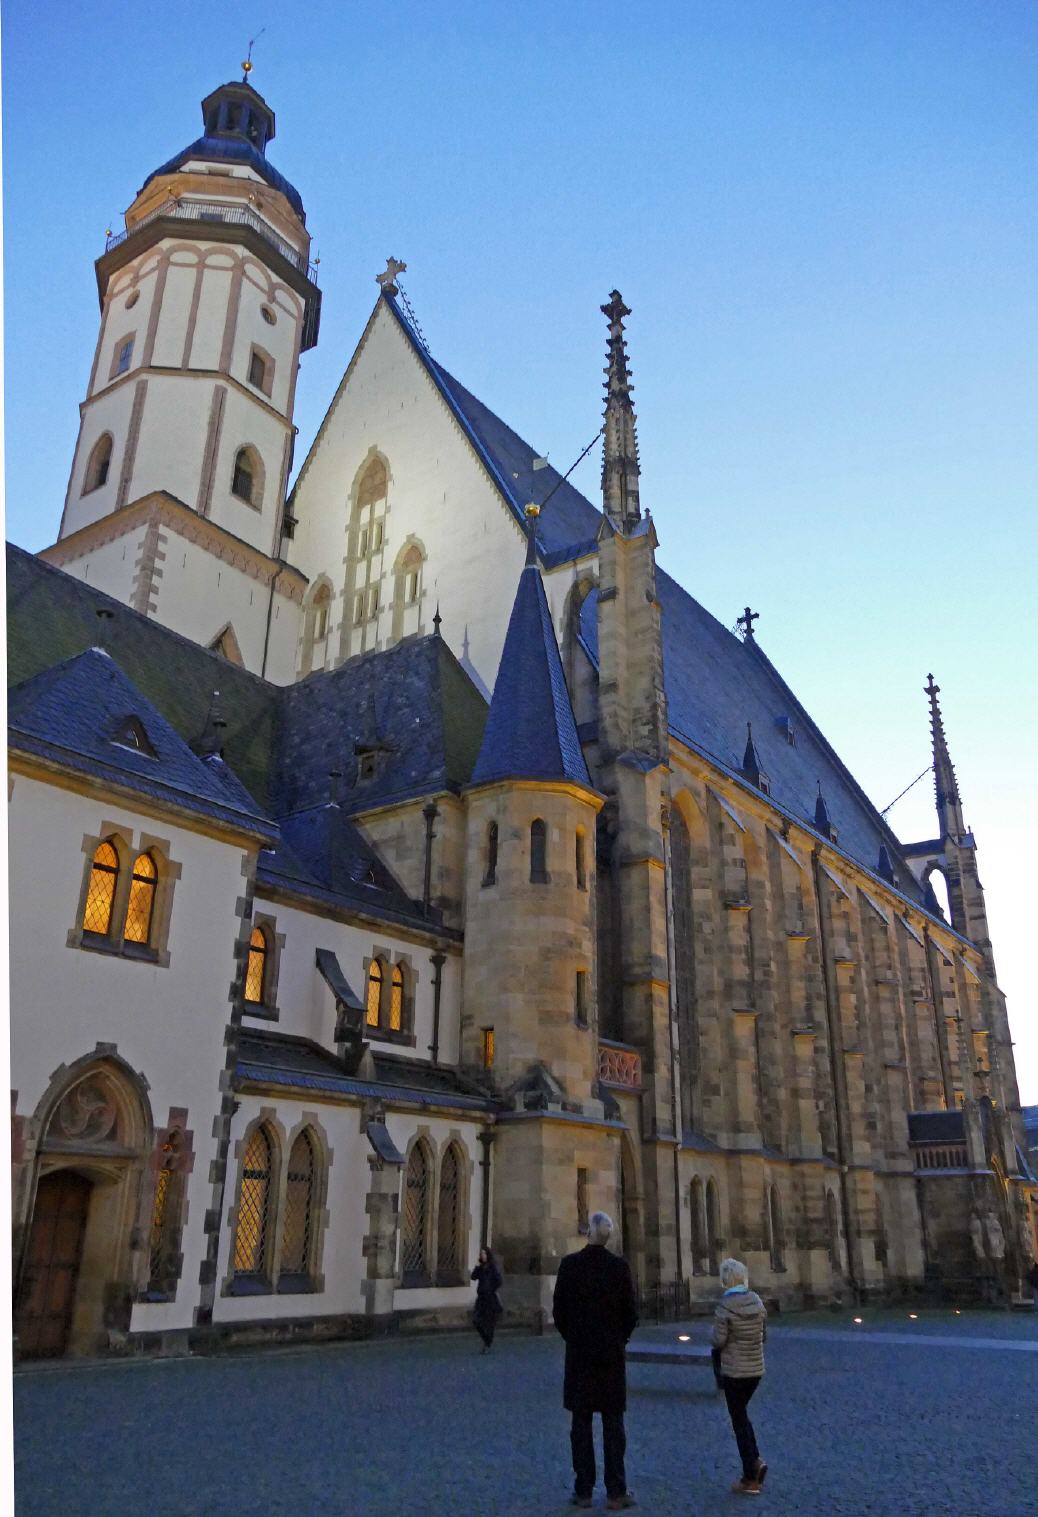 Thomaskirche in Leipzig